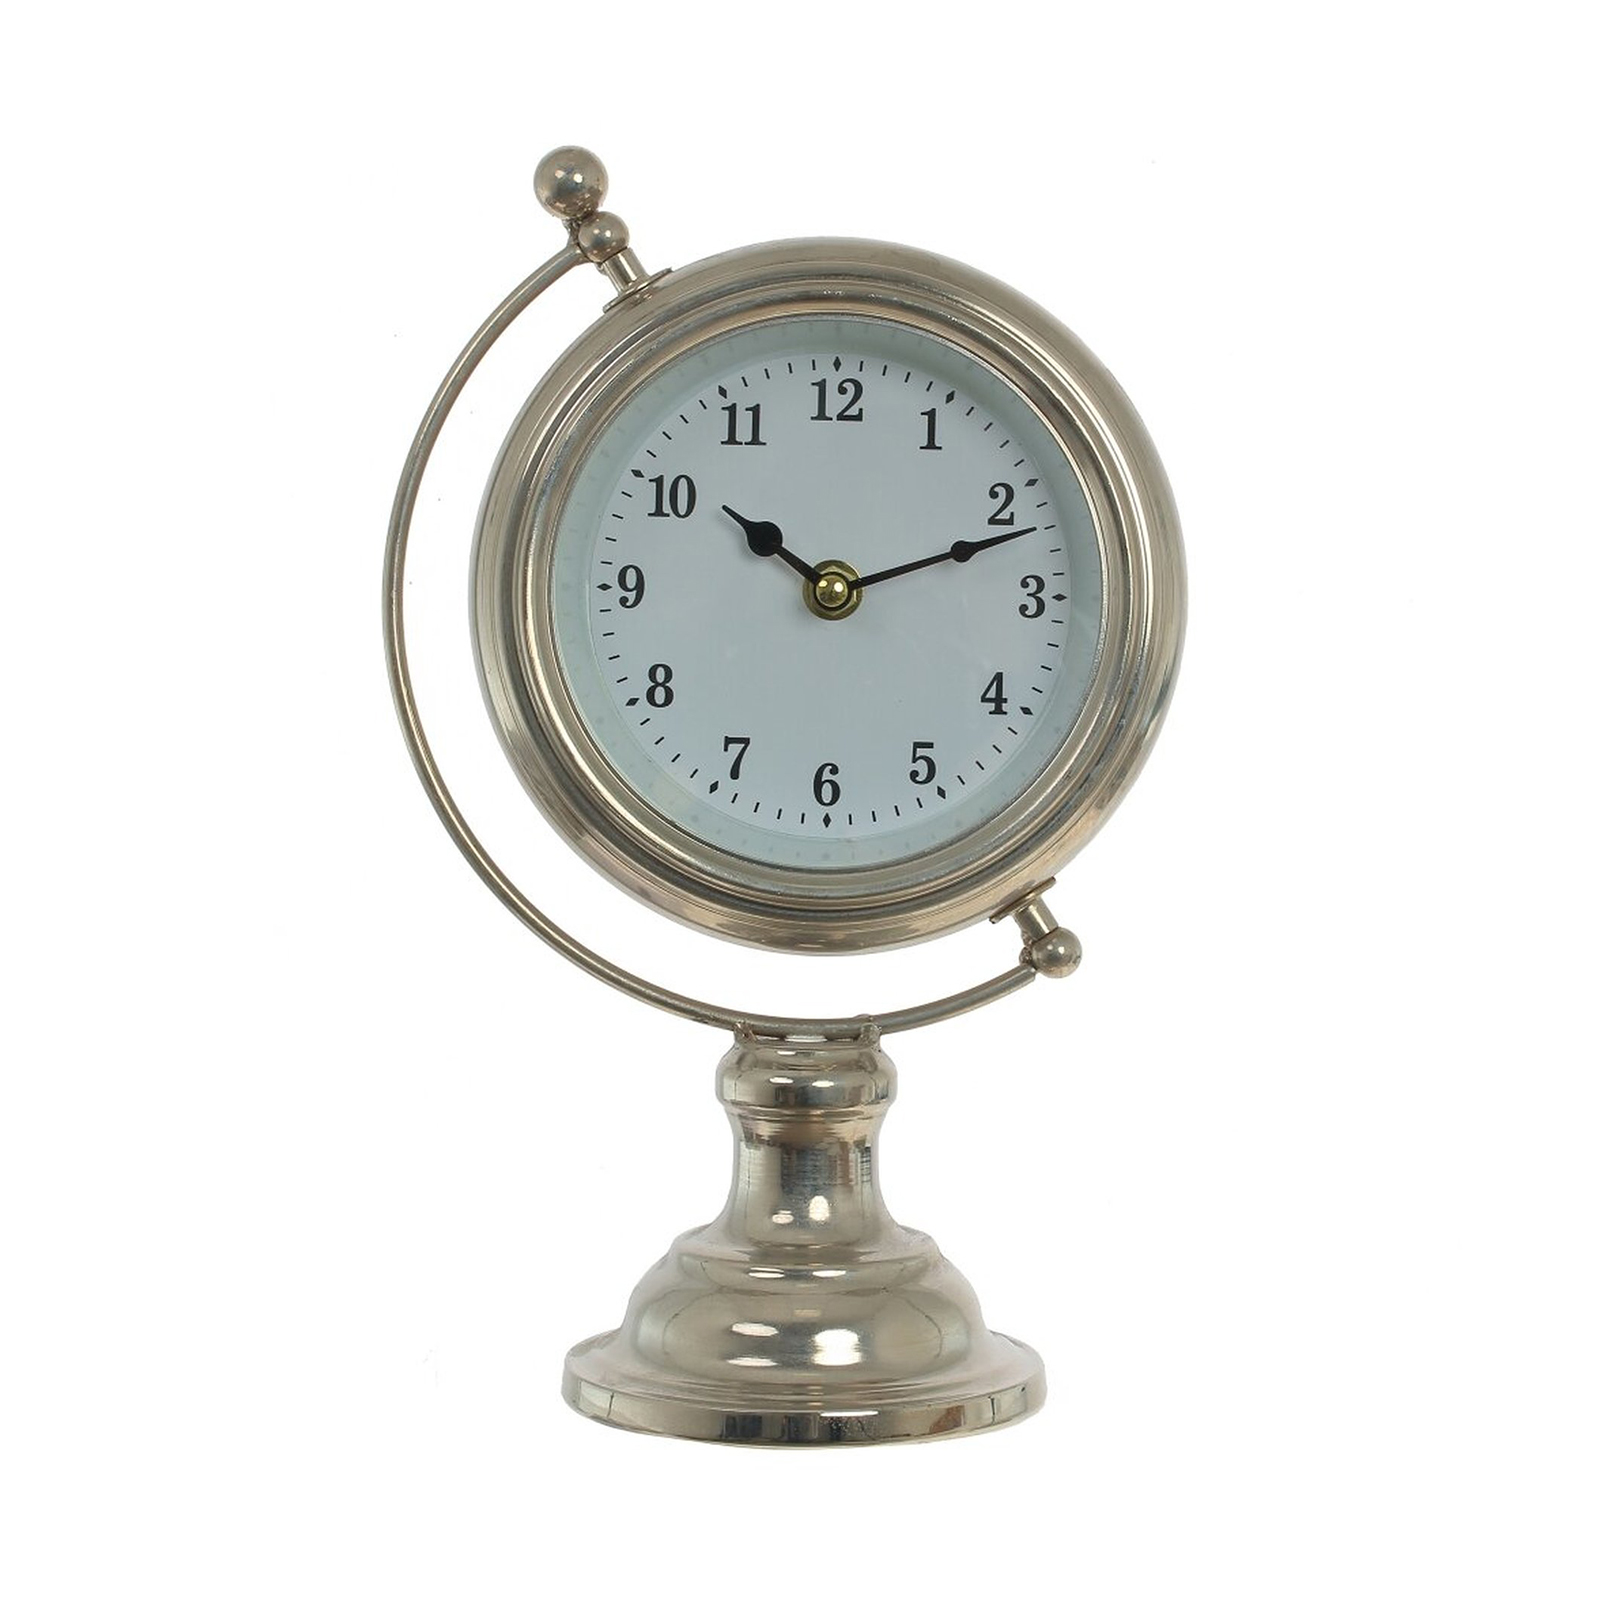 Настольные часы Kairos tb002w. WS-1003 статуэтка-часы Атлант. Часы настольные декоративные. Часы настольные Сургутнефтегаз.